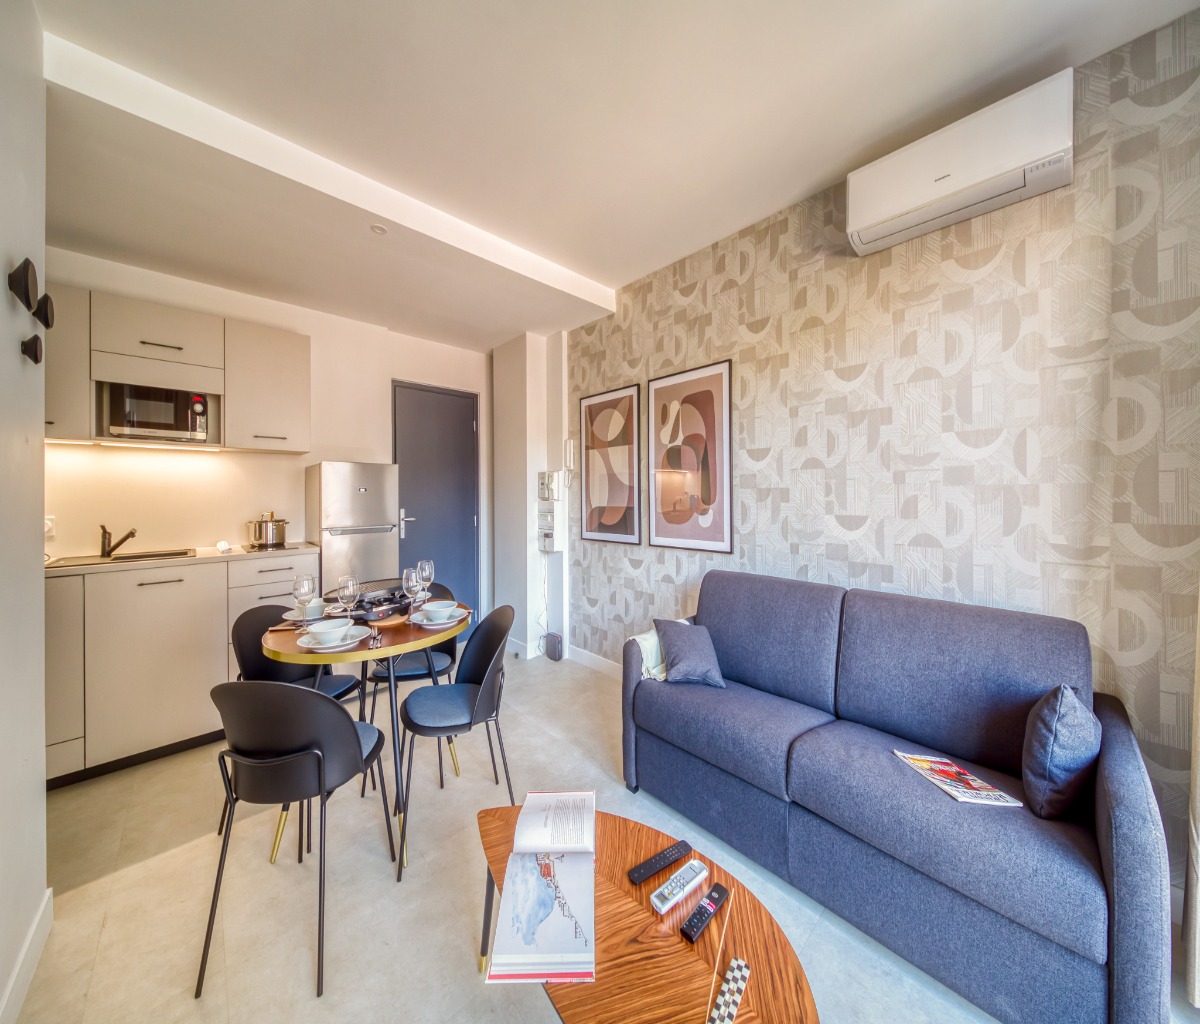 Le spacieux 4 location meublée Grenoble tout confort court et long séjour - appartement Grenoble Alpes Métropole - Location de vacances - Grenoble